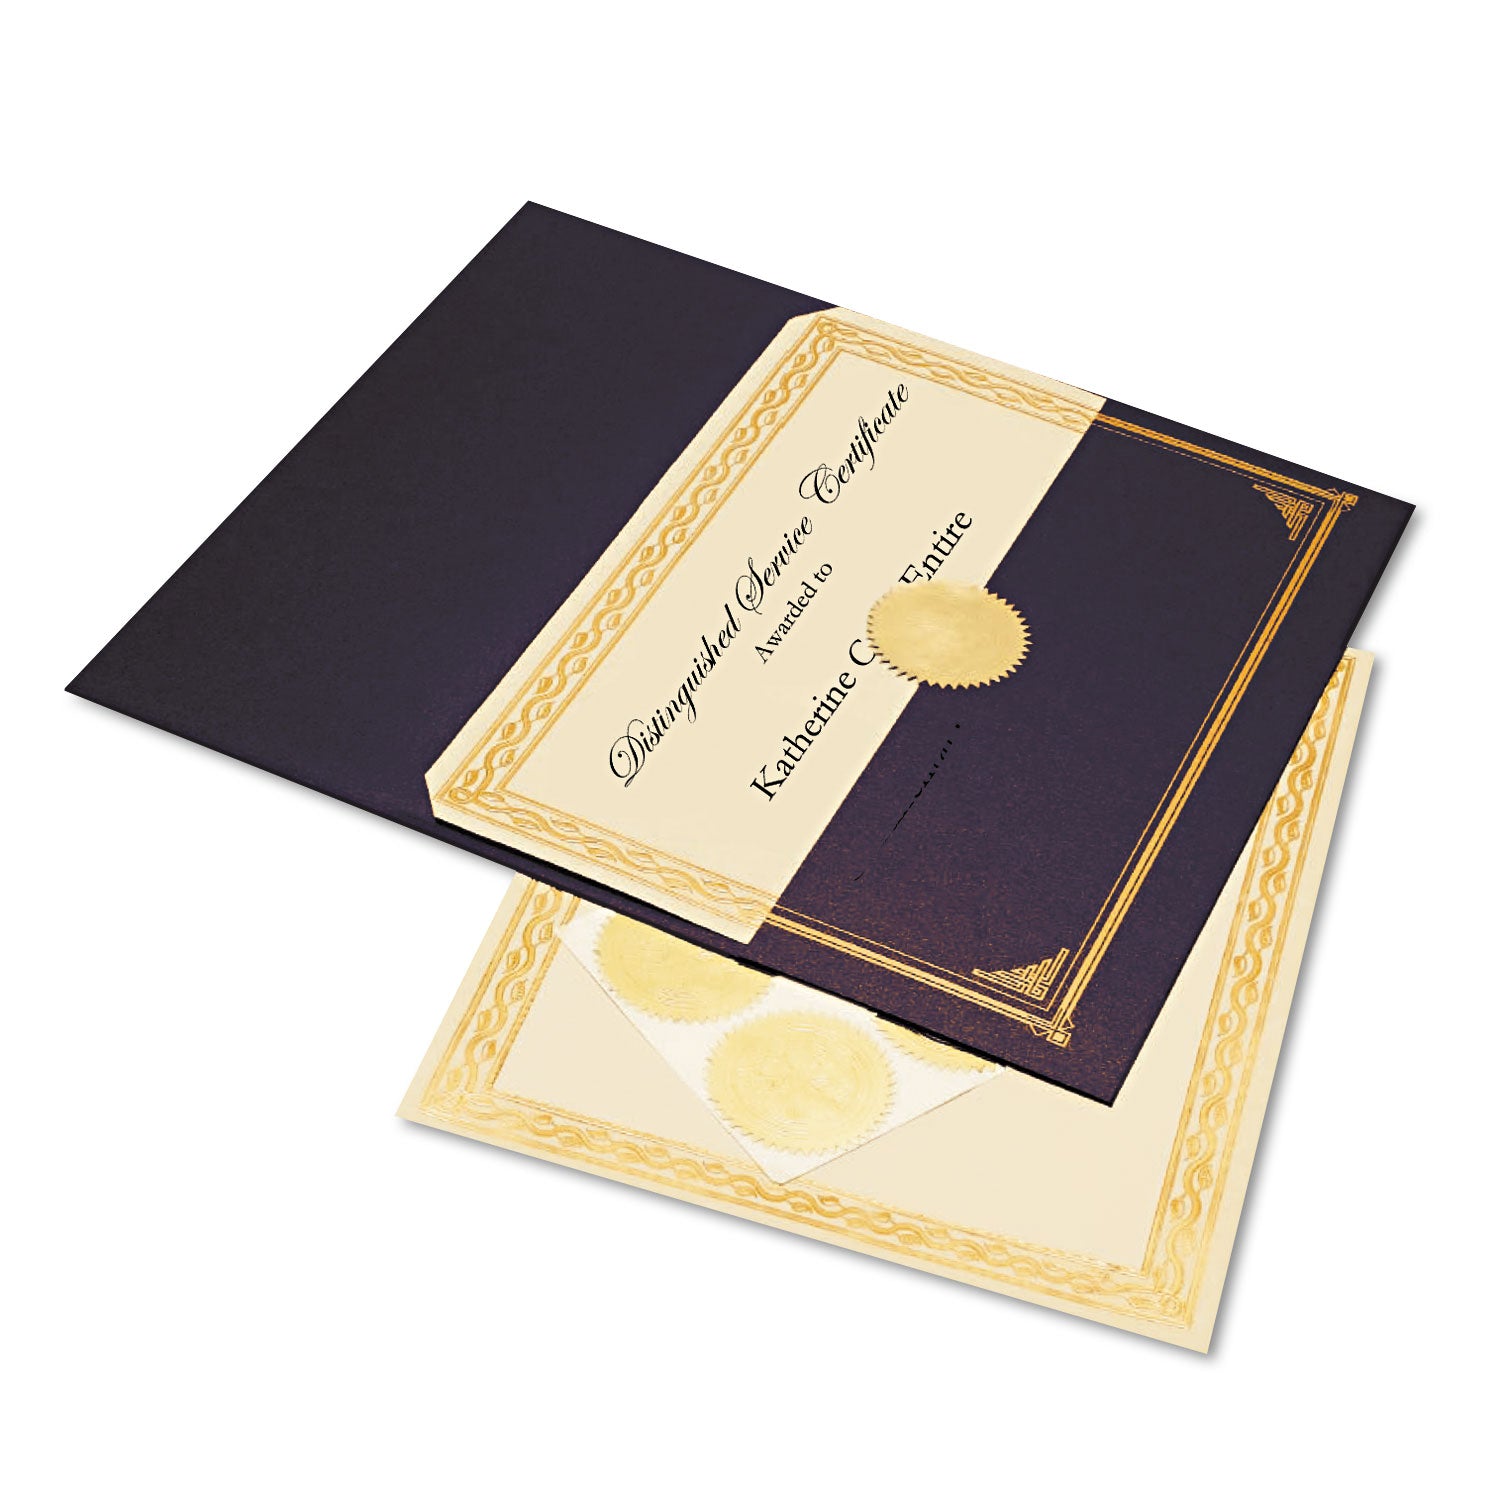 Ivory/Gold Foil Embossed Award Certificate Kit, 8.5 x 11, Blue Metallic Cover, Gold Border, 6/KIt - 